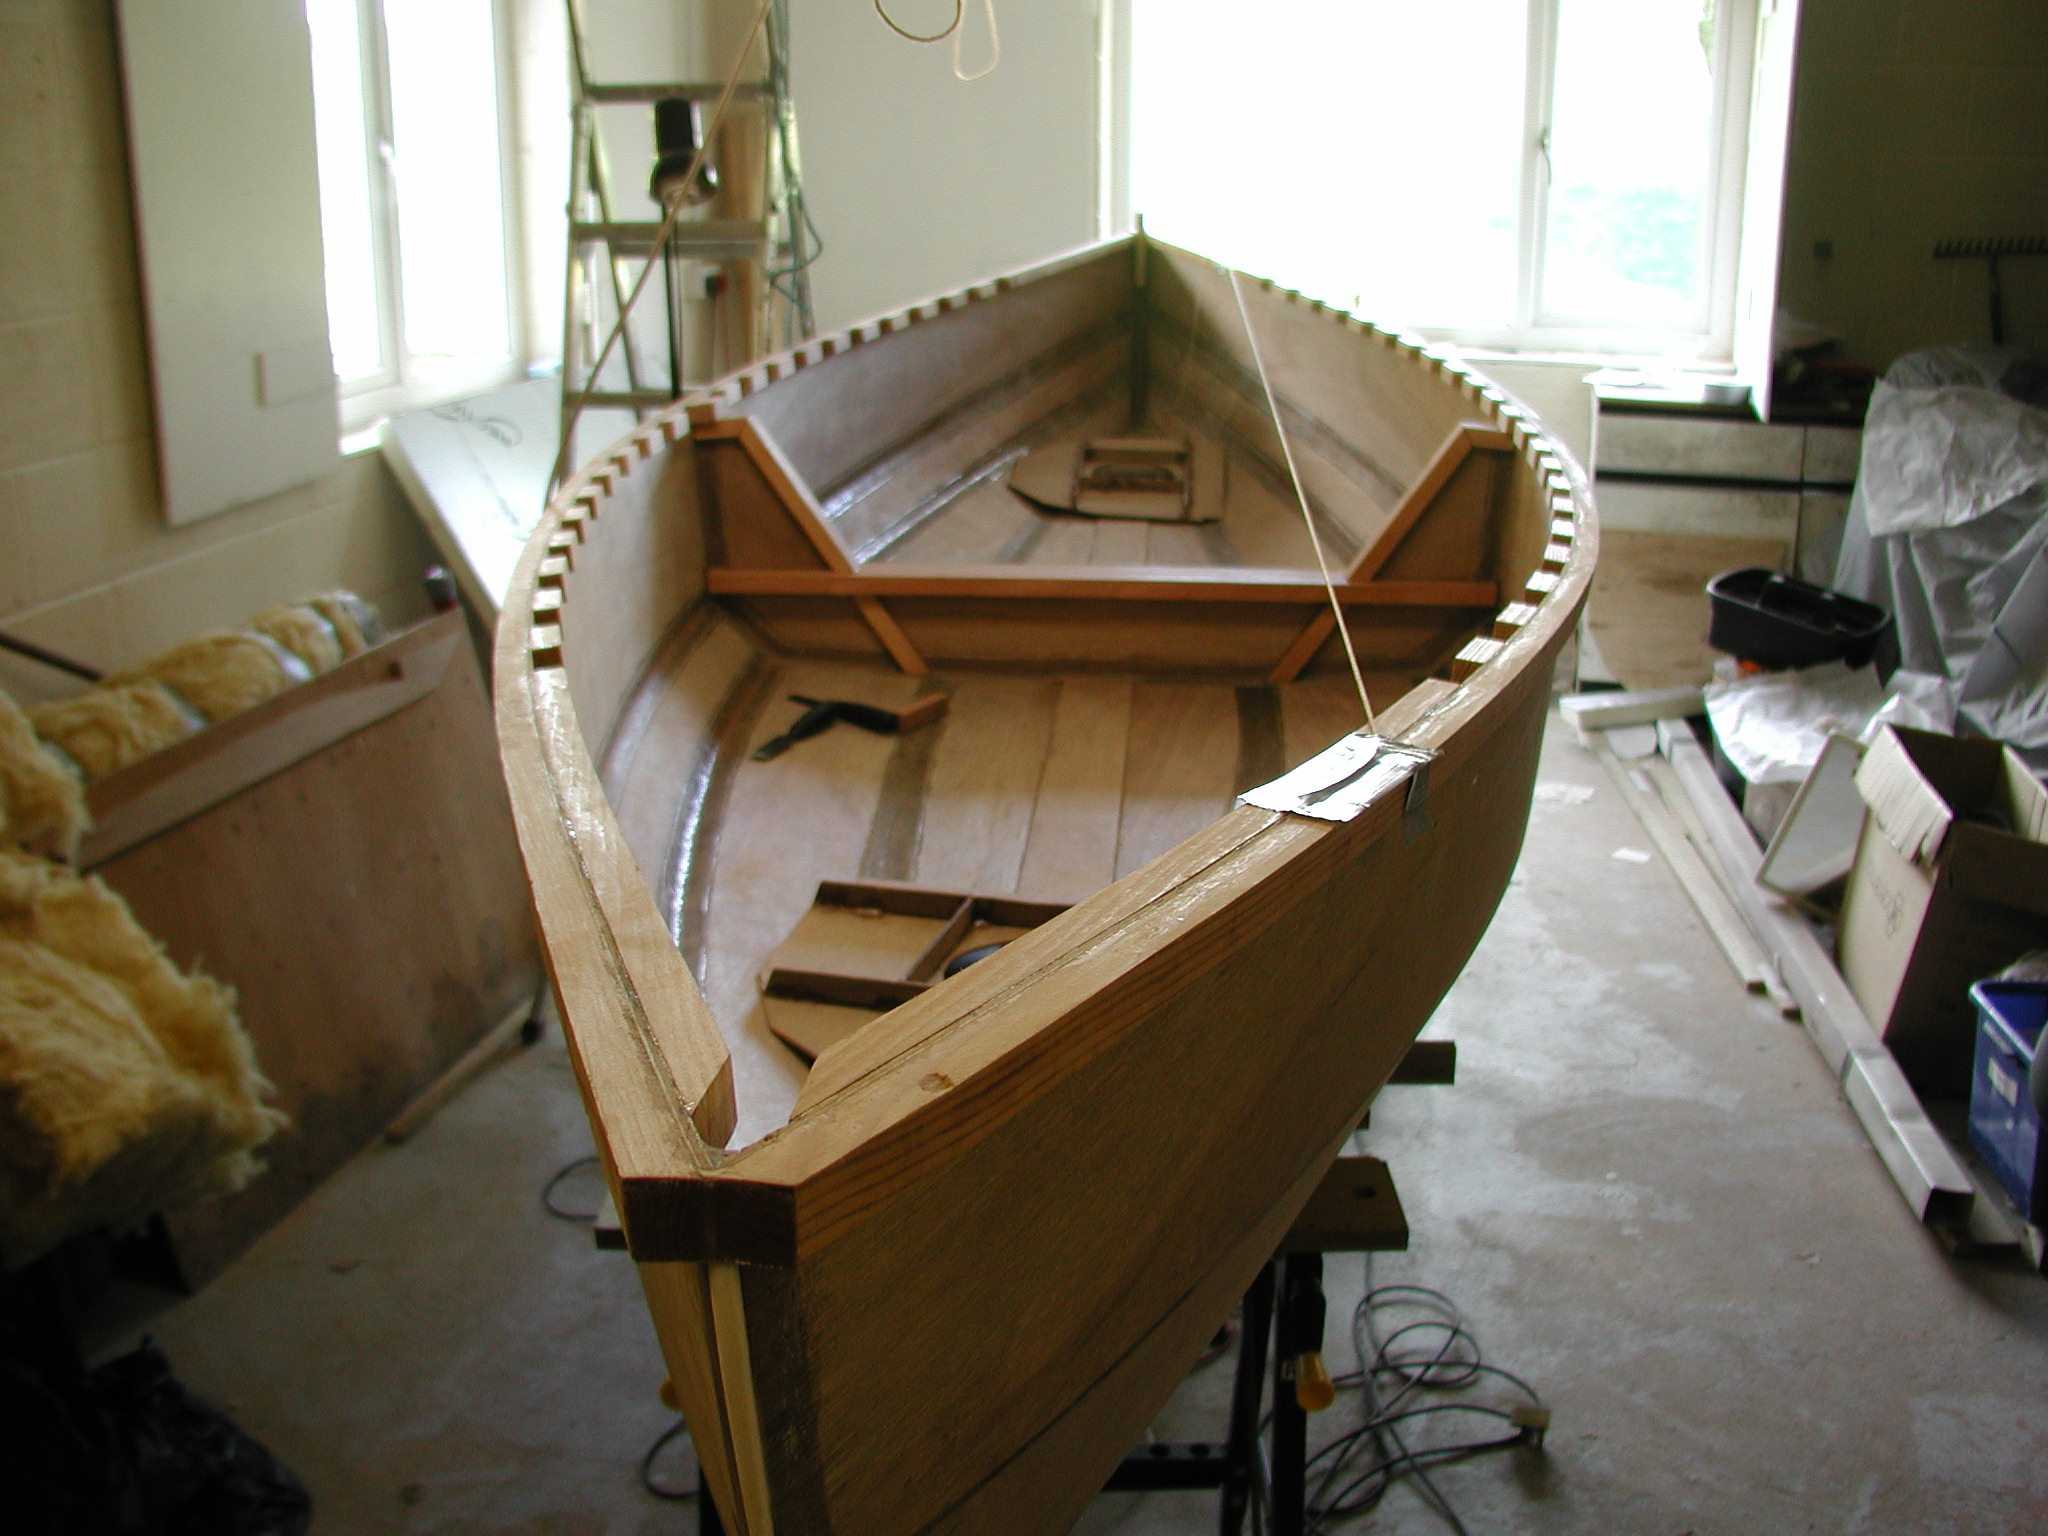 Лодка из фанеры своими руками: чертежи выкройки, как сделать самодельную фанерную лодку